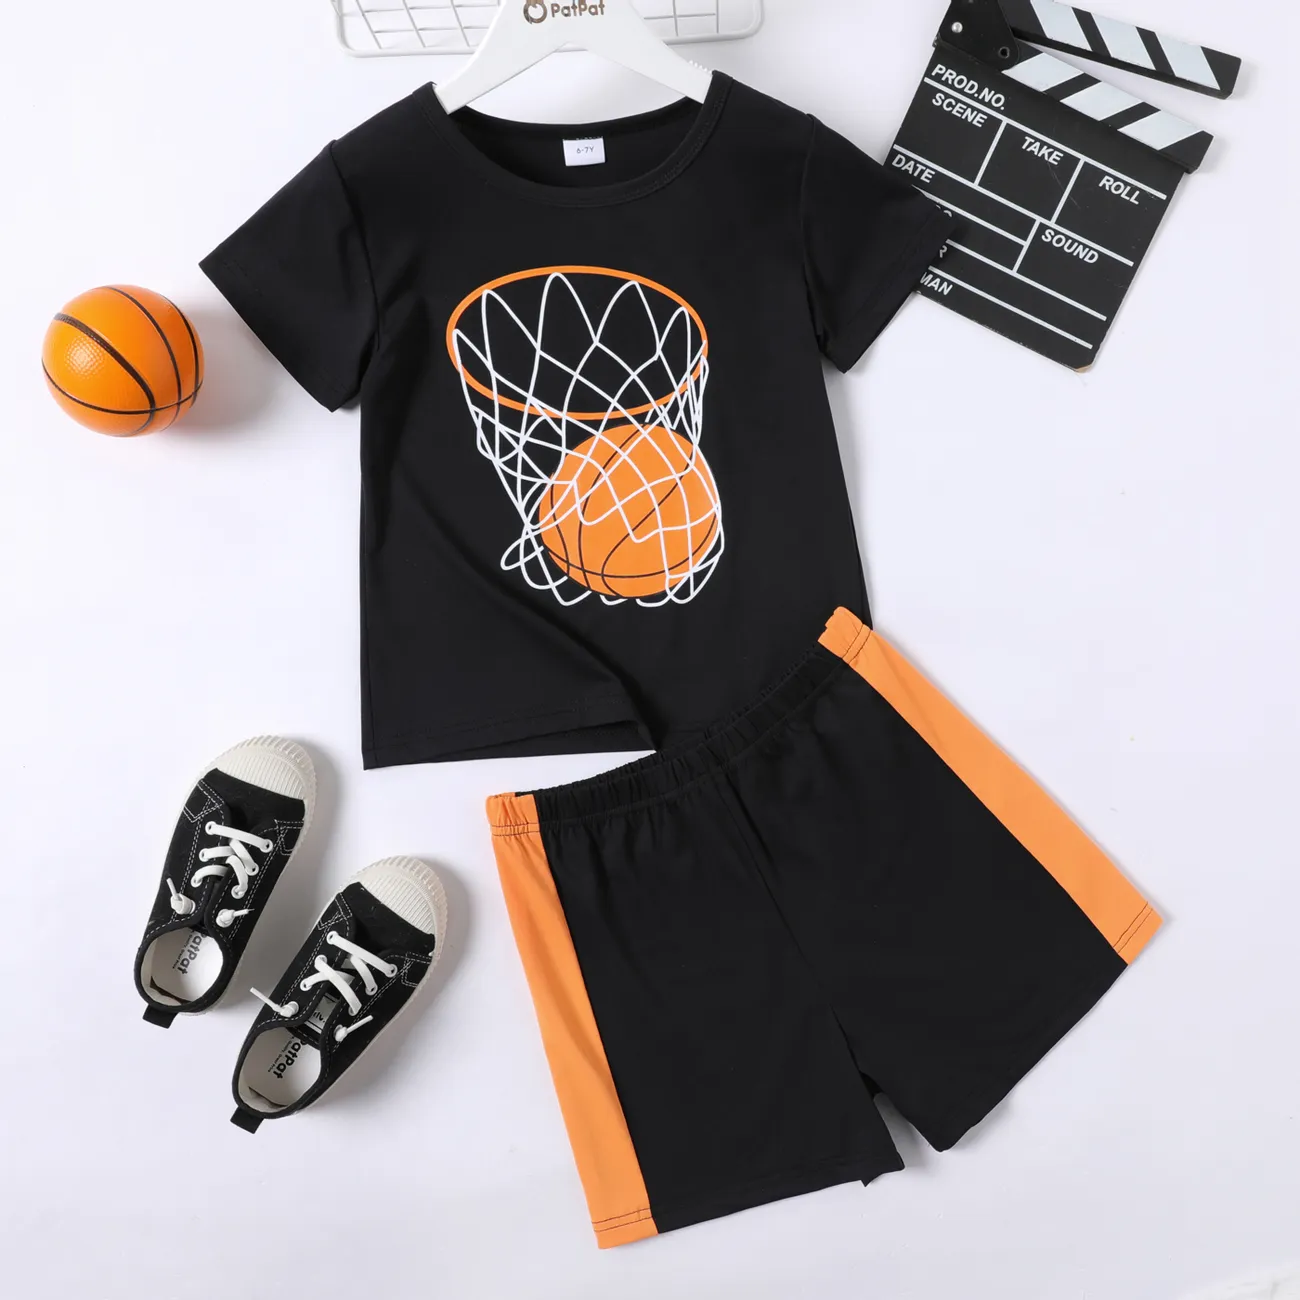 طقم تي شيرت بأكمام قصيرة مطبوع عليه كرة السلة / كرة القدم للأطفال من قطعتين ومجموعة شورت مطاطي أسود big image 1